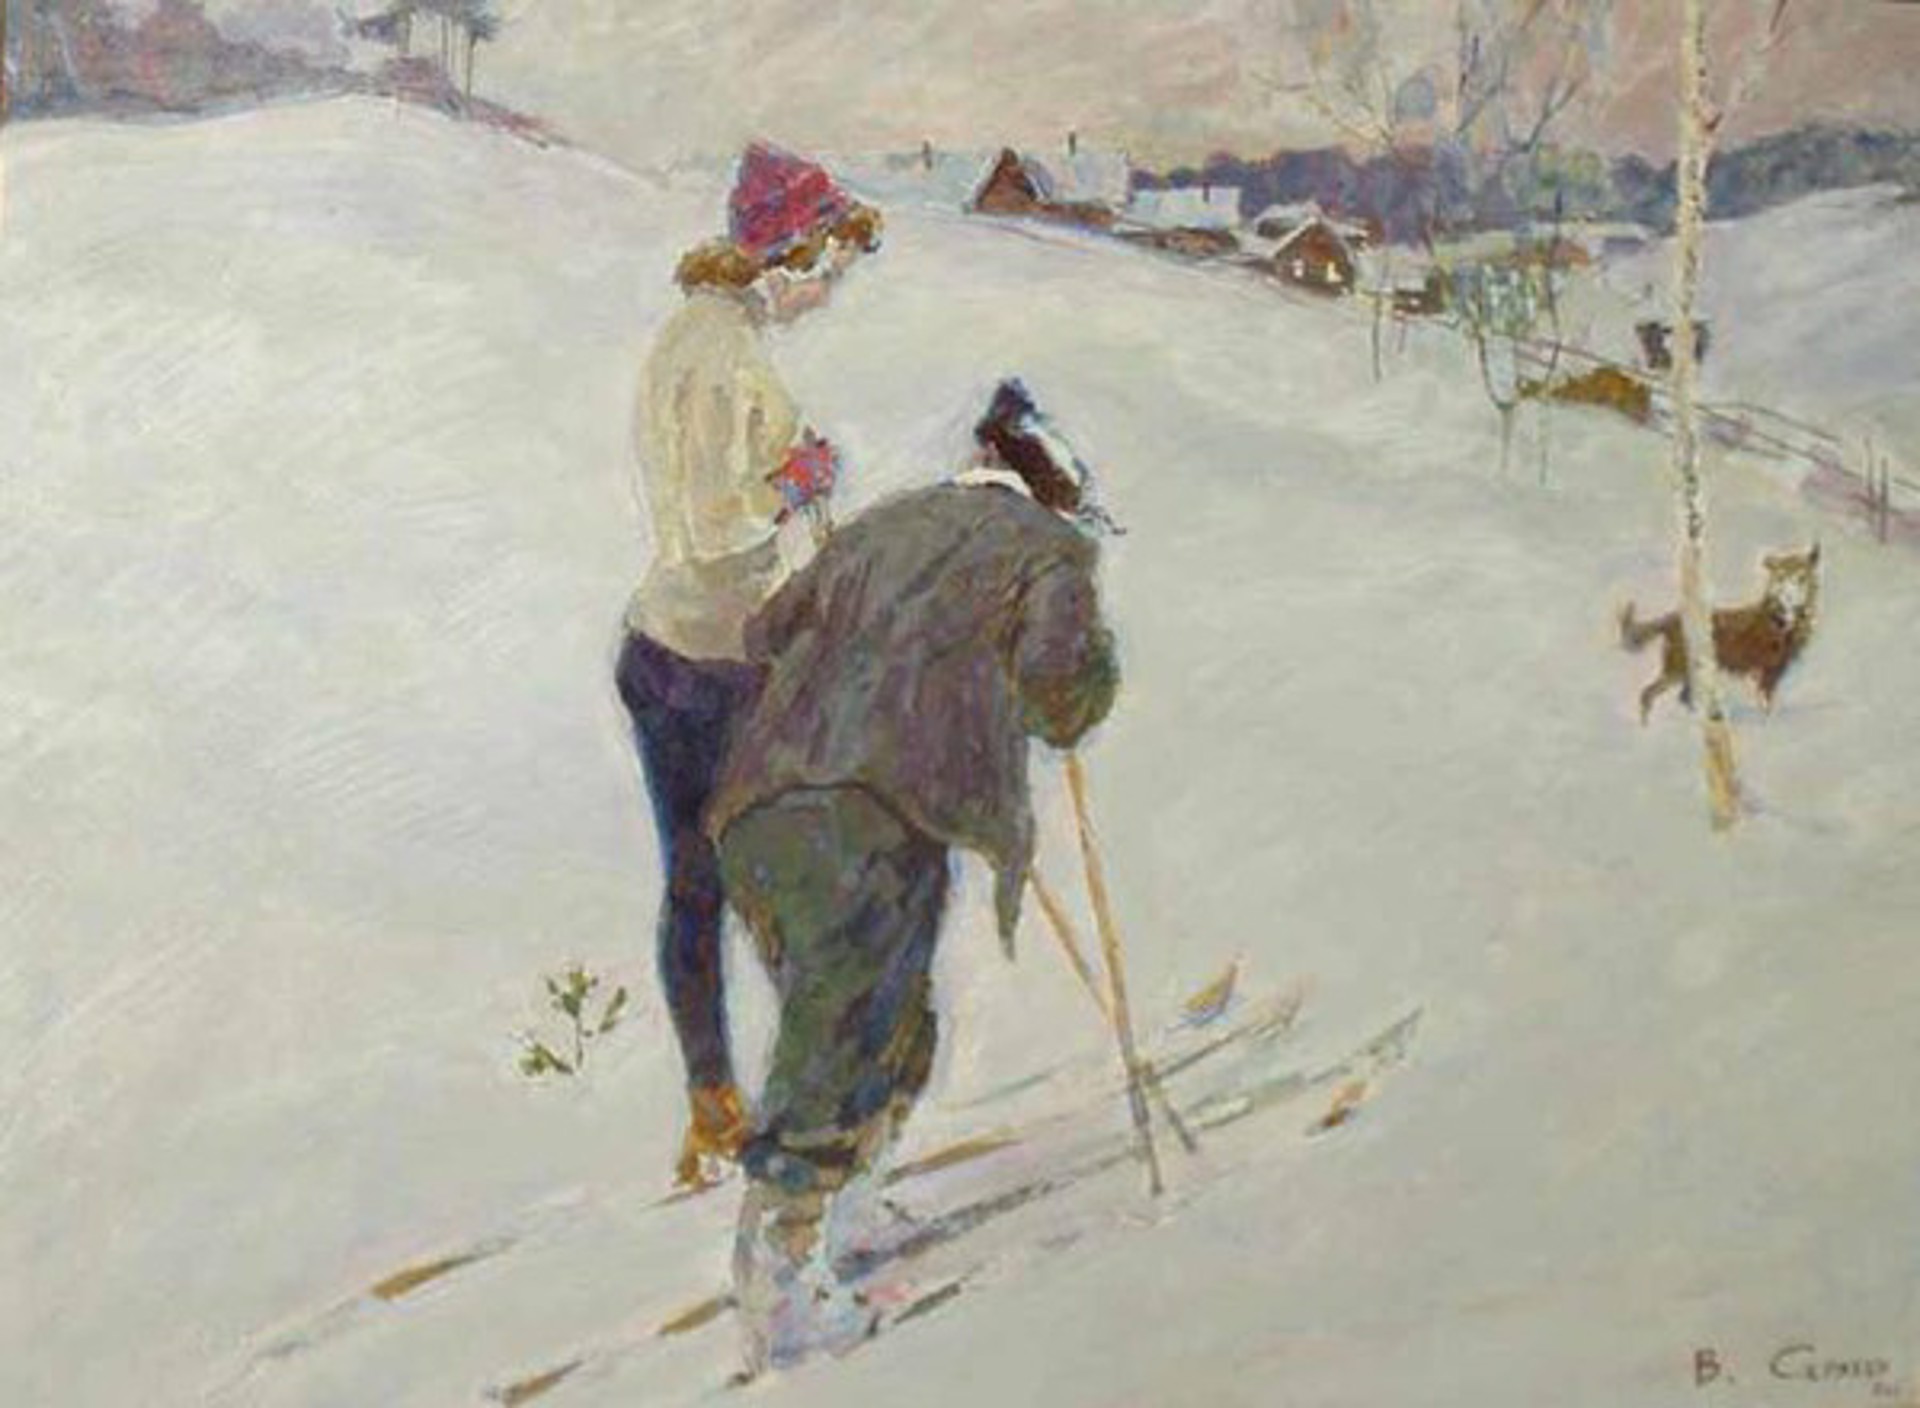 Conversation (snow skiing) by Vladimir Skryabin